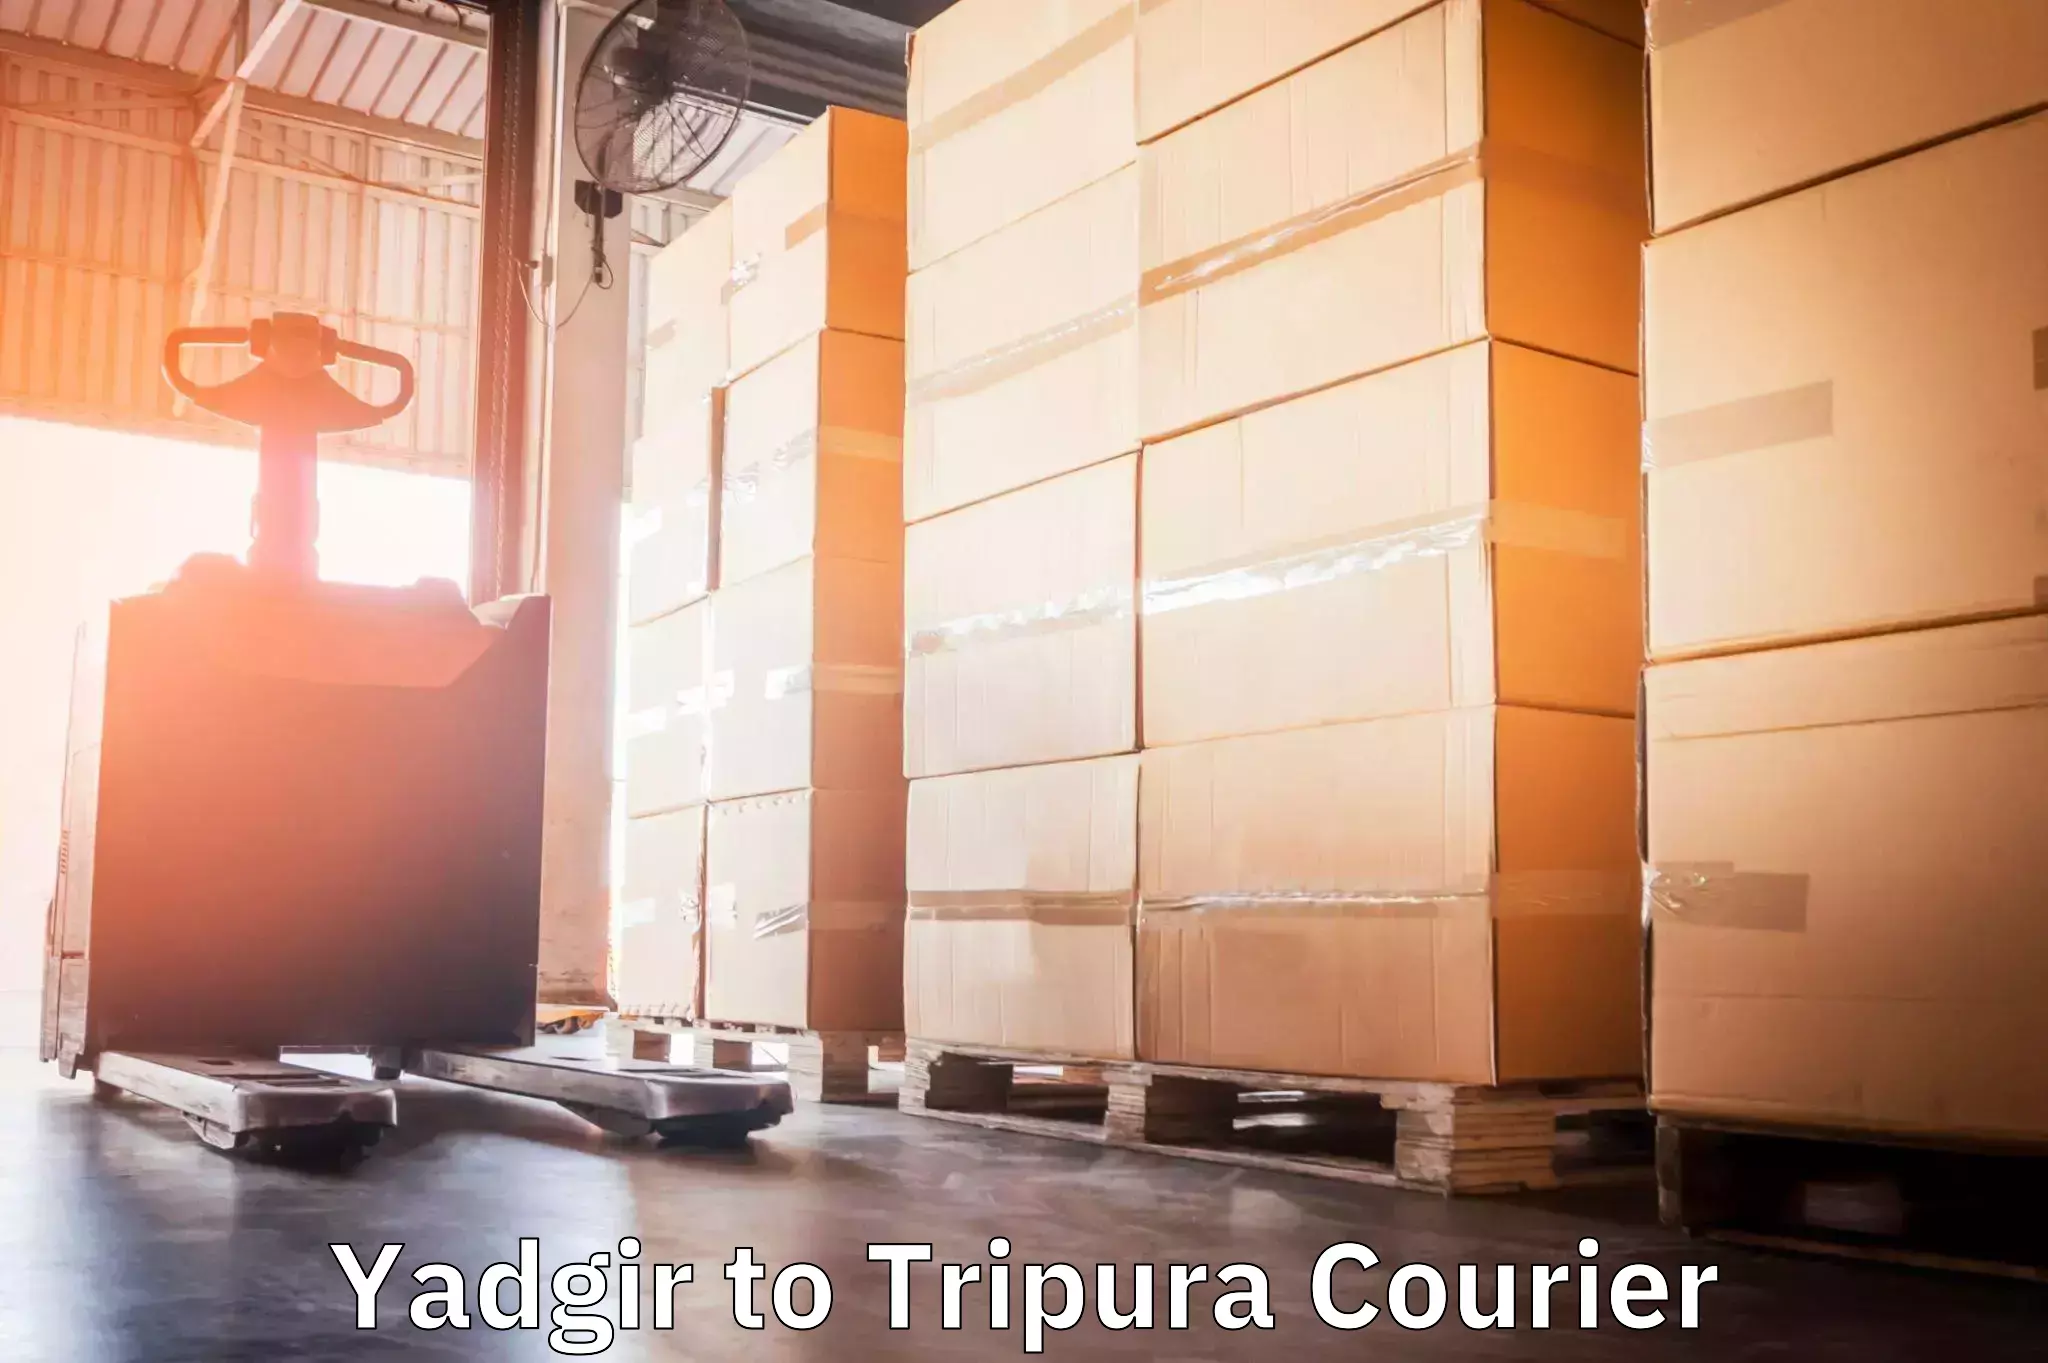 Door-to-door shipping in Yadgir to Udaipur Tripura